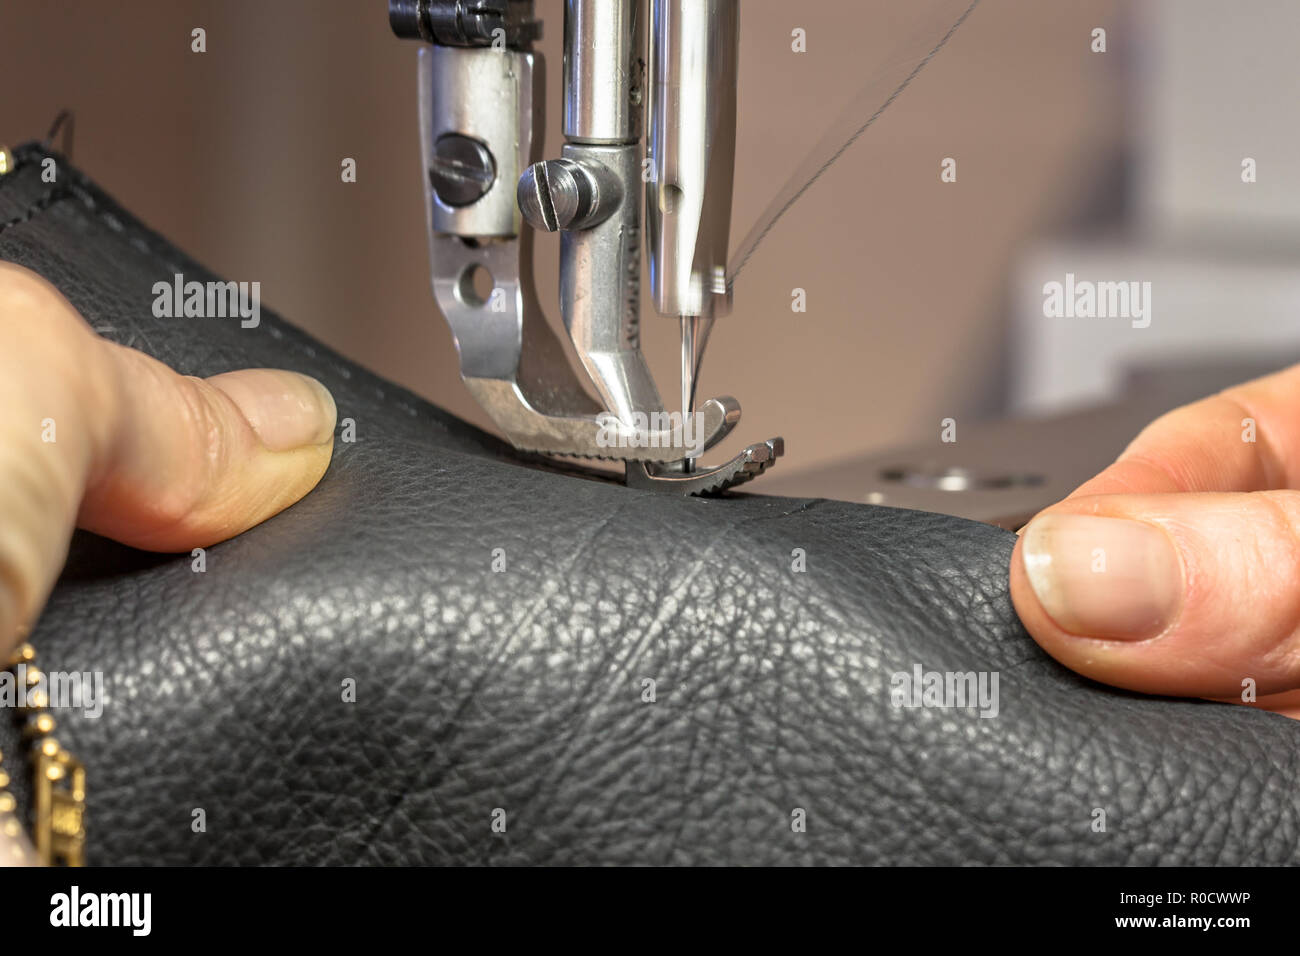 Mains travaillant sur une machine à coudre en cuir en action Banque D'Images